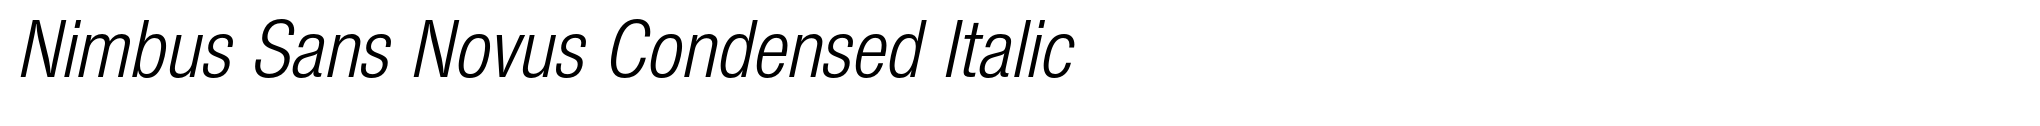 Nimbus Sans Novus Condensed Italic image